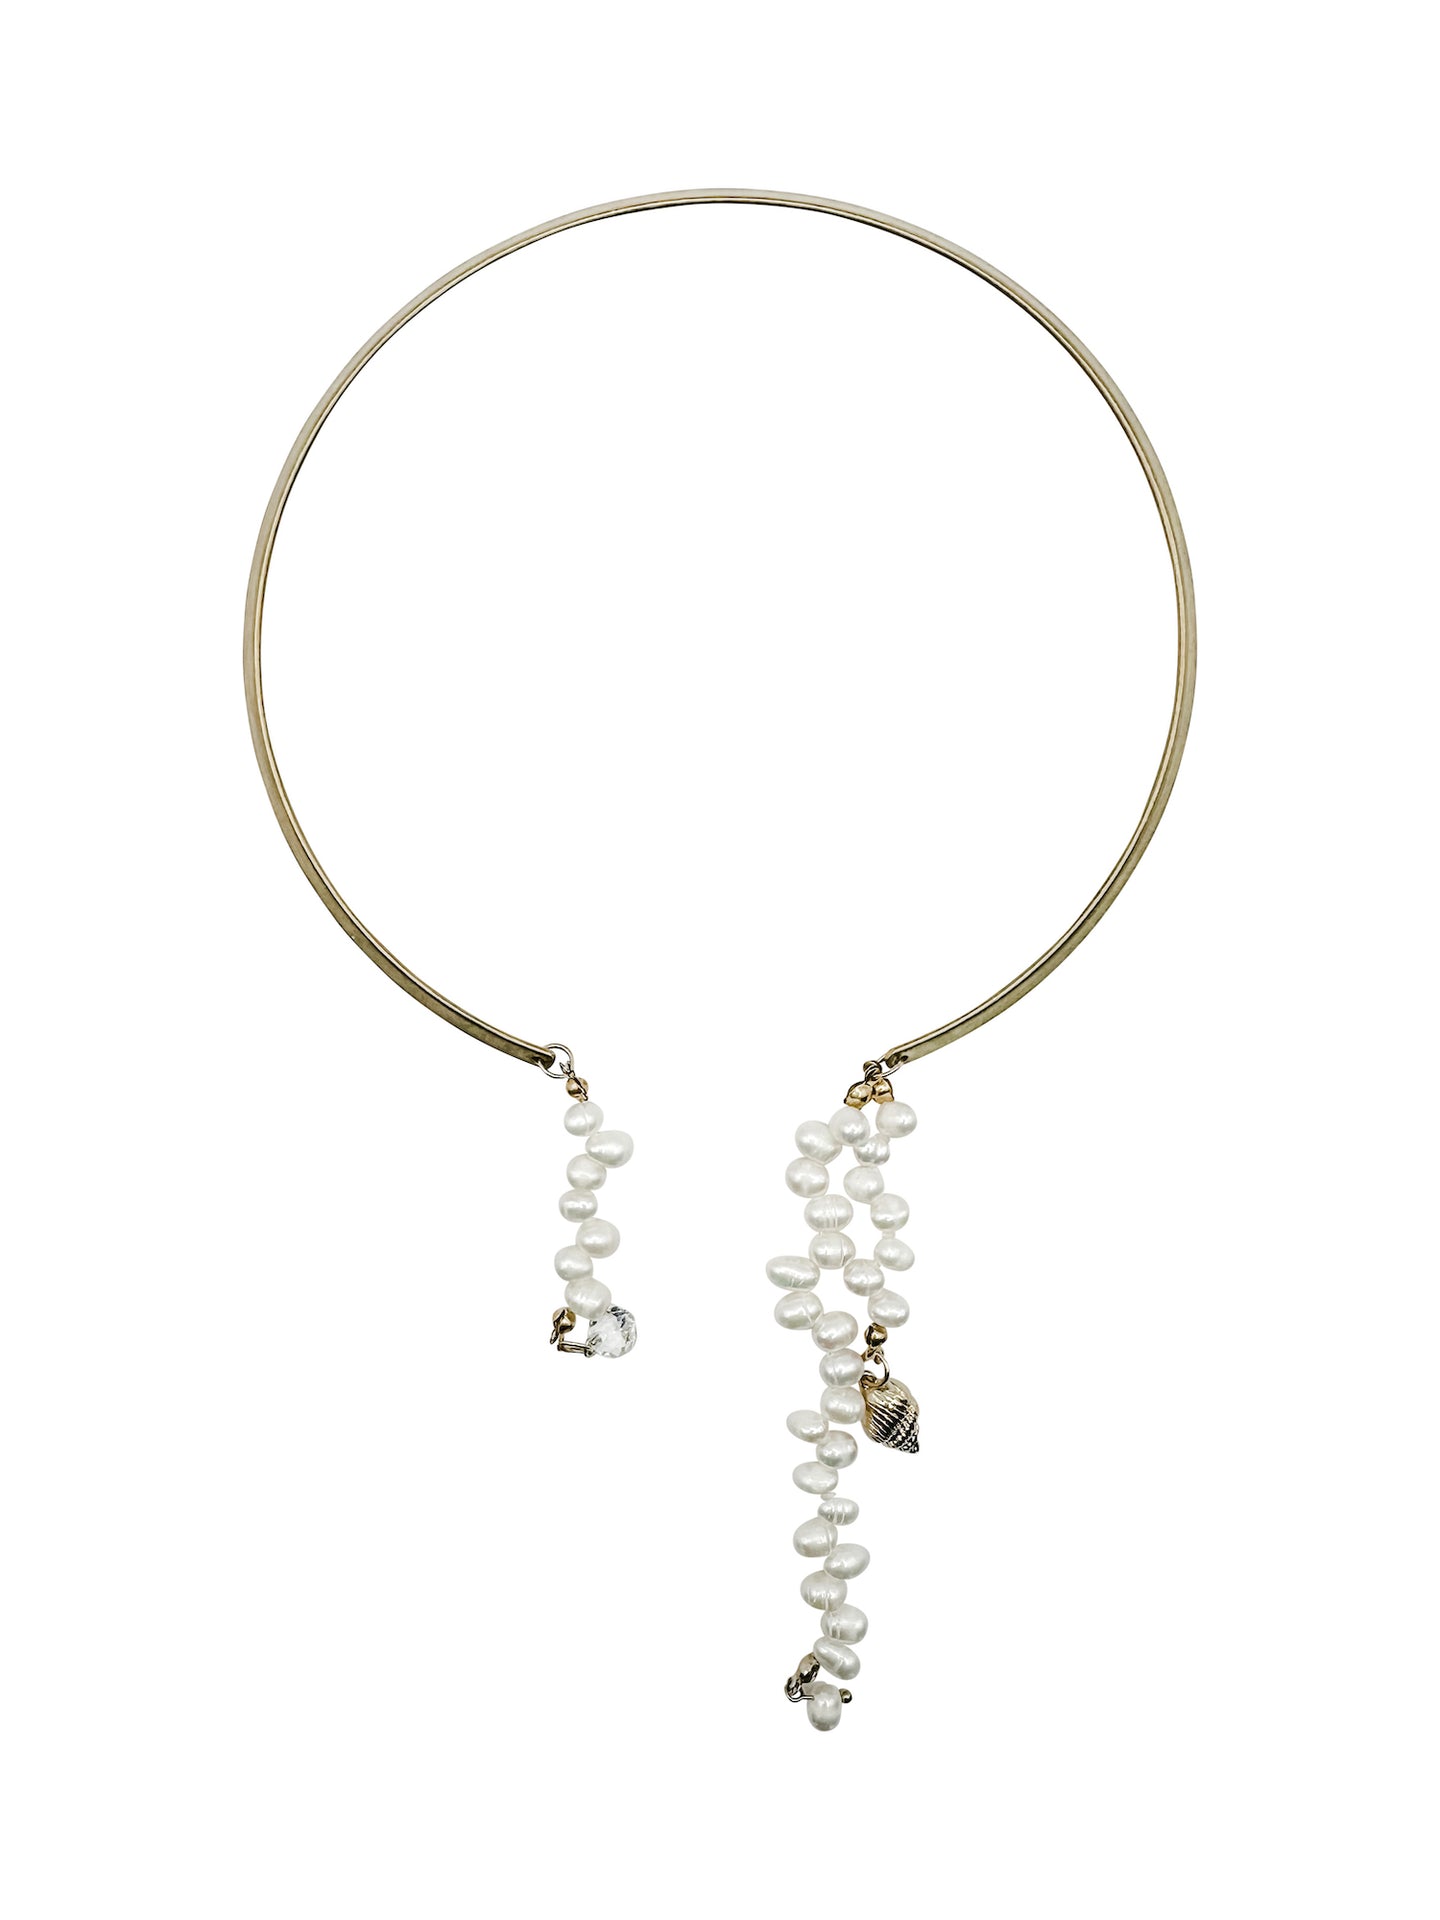 Kholapuri Oxidized Silver Choker Necklace Combo Set – Simpliful Jewelry